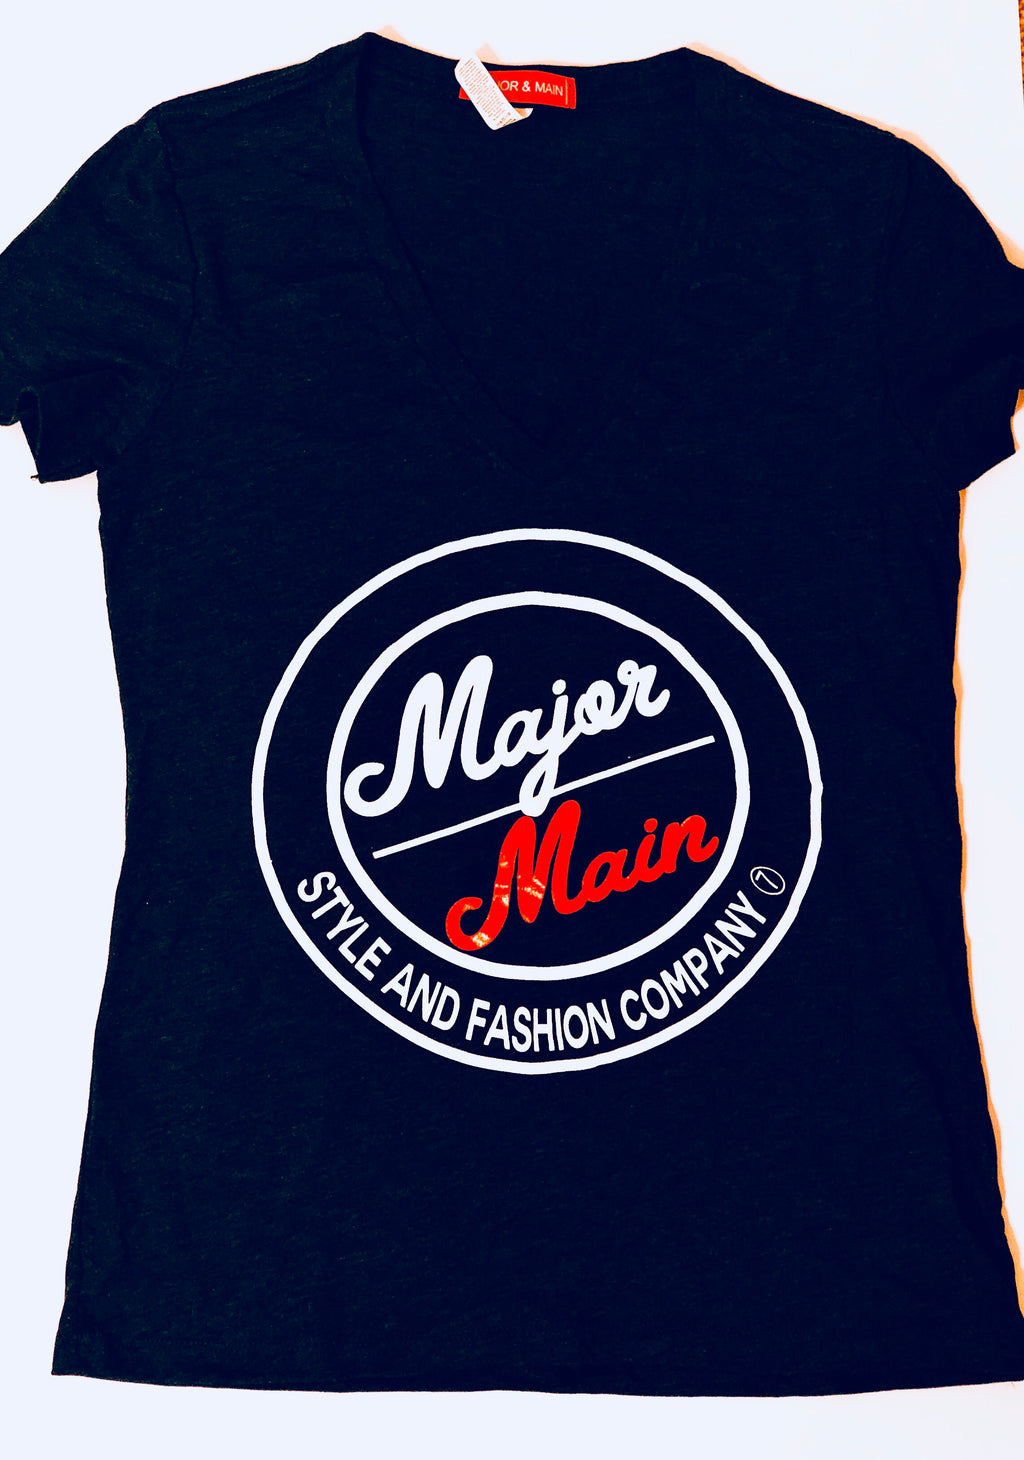 Major & Main: Style and Fashion Company-Logo Shirt